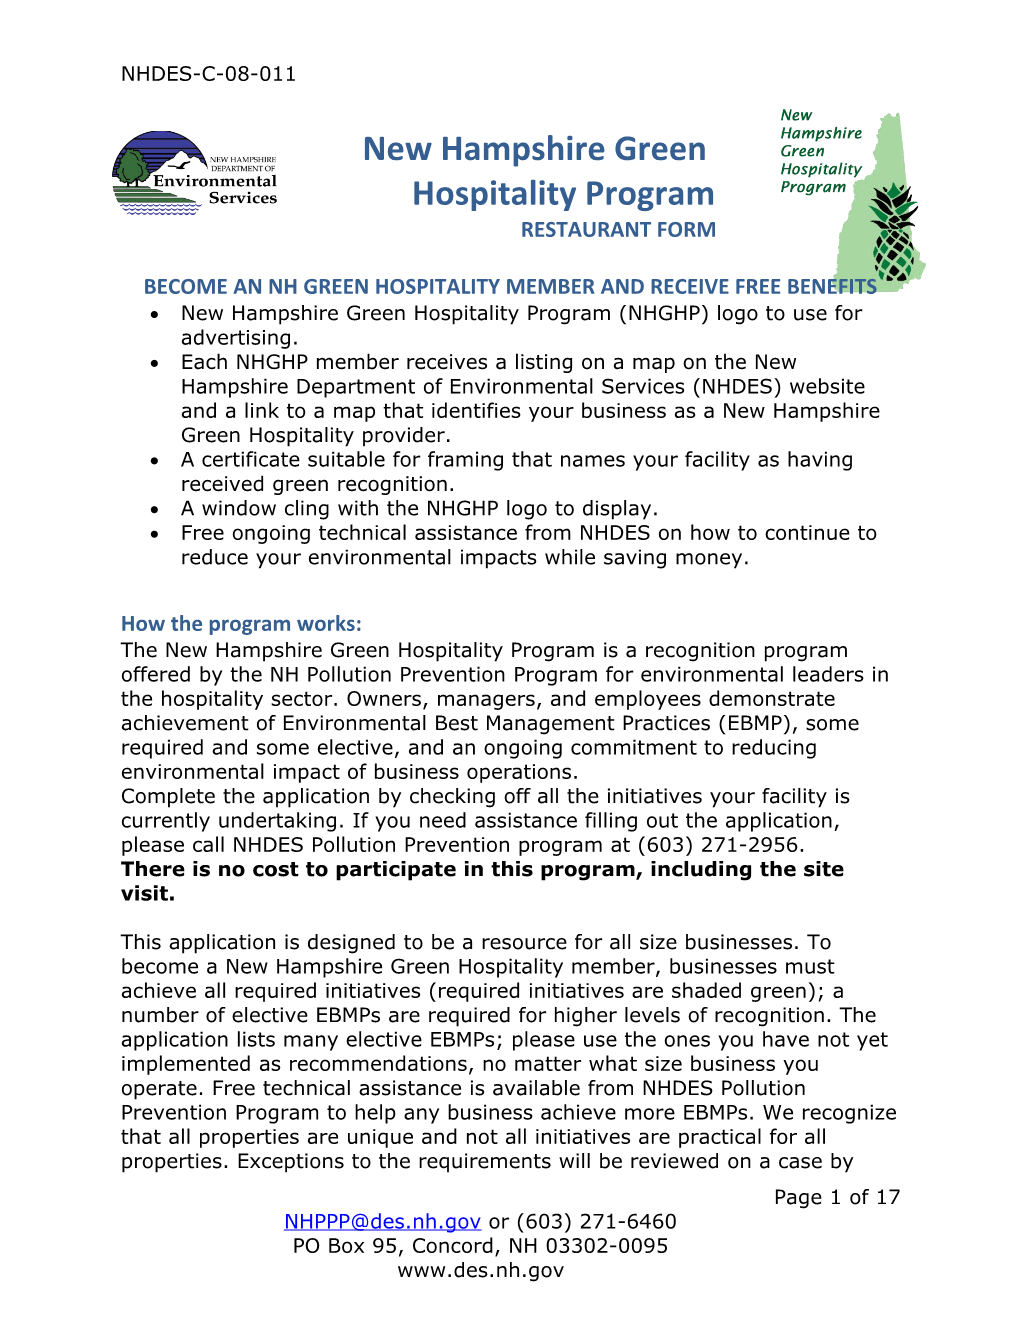 New Hampshire Green Hospitality Program